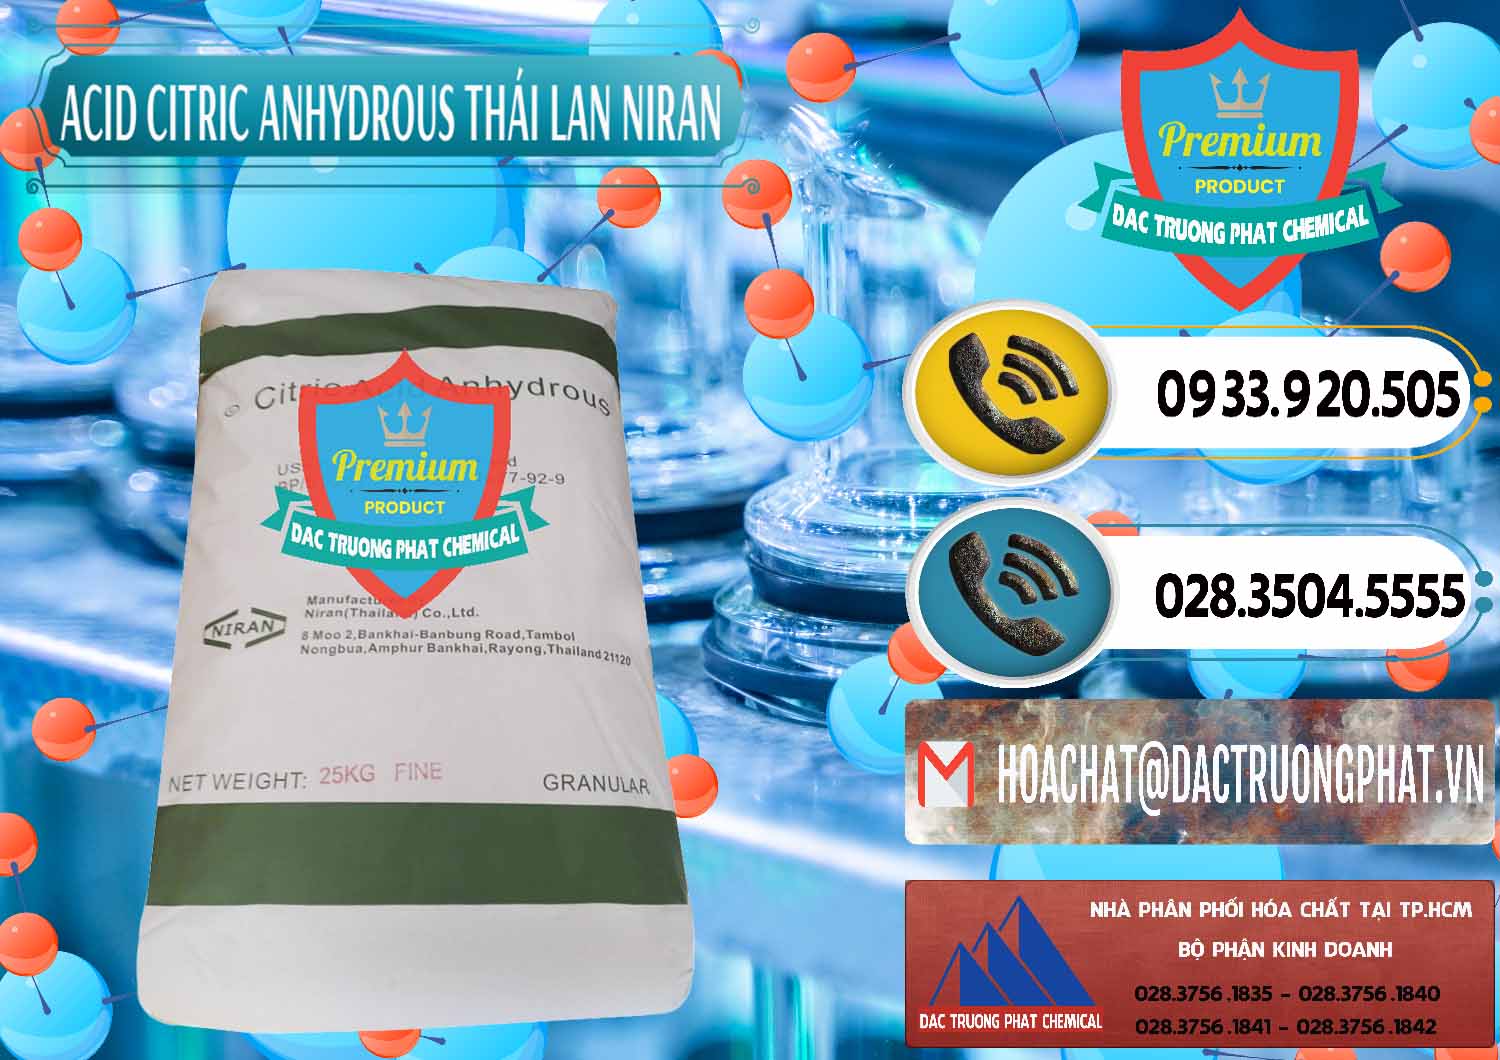 Đơn vị phân phối & bán Acid Citric - Axit Citric Anhydrous - Thái Lan Niran - 0231 - Nơi chuyên cung cấp ( nhập khẩu ) hóa chất tại TP.HCM - hoachatdetnhuom.vn